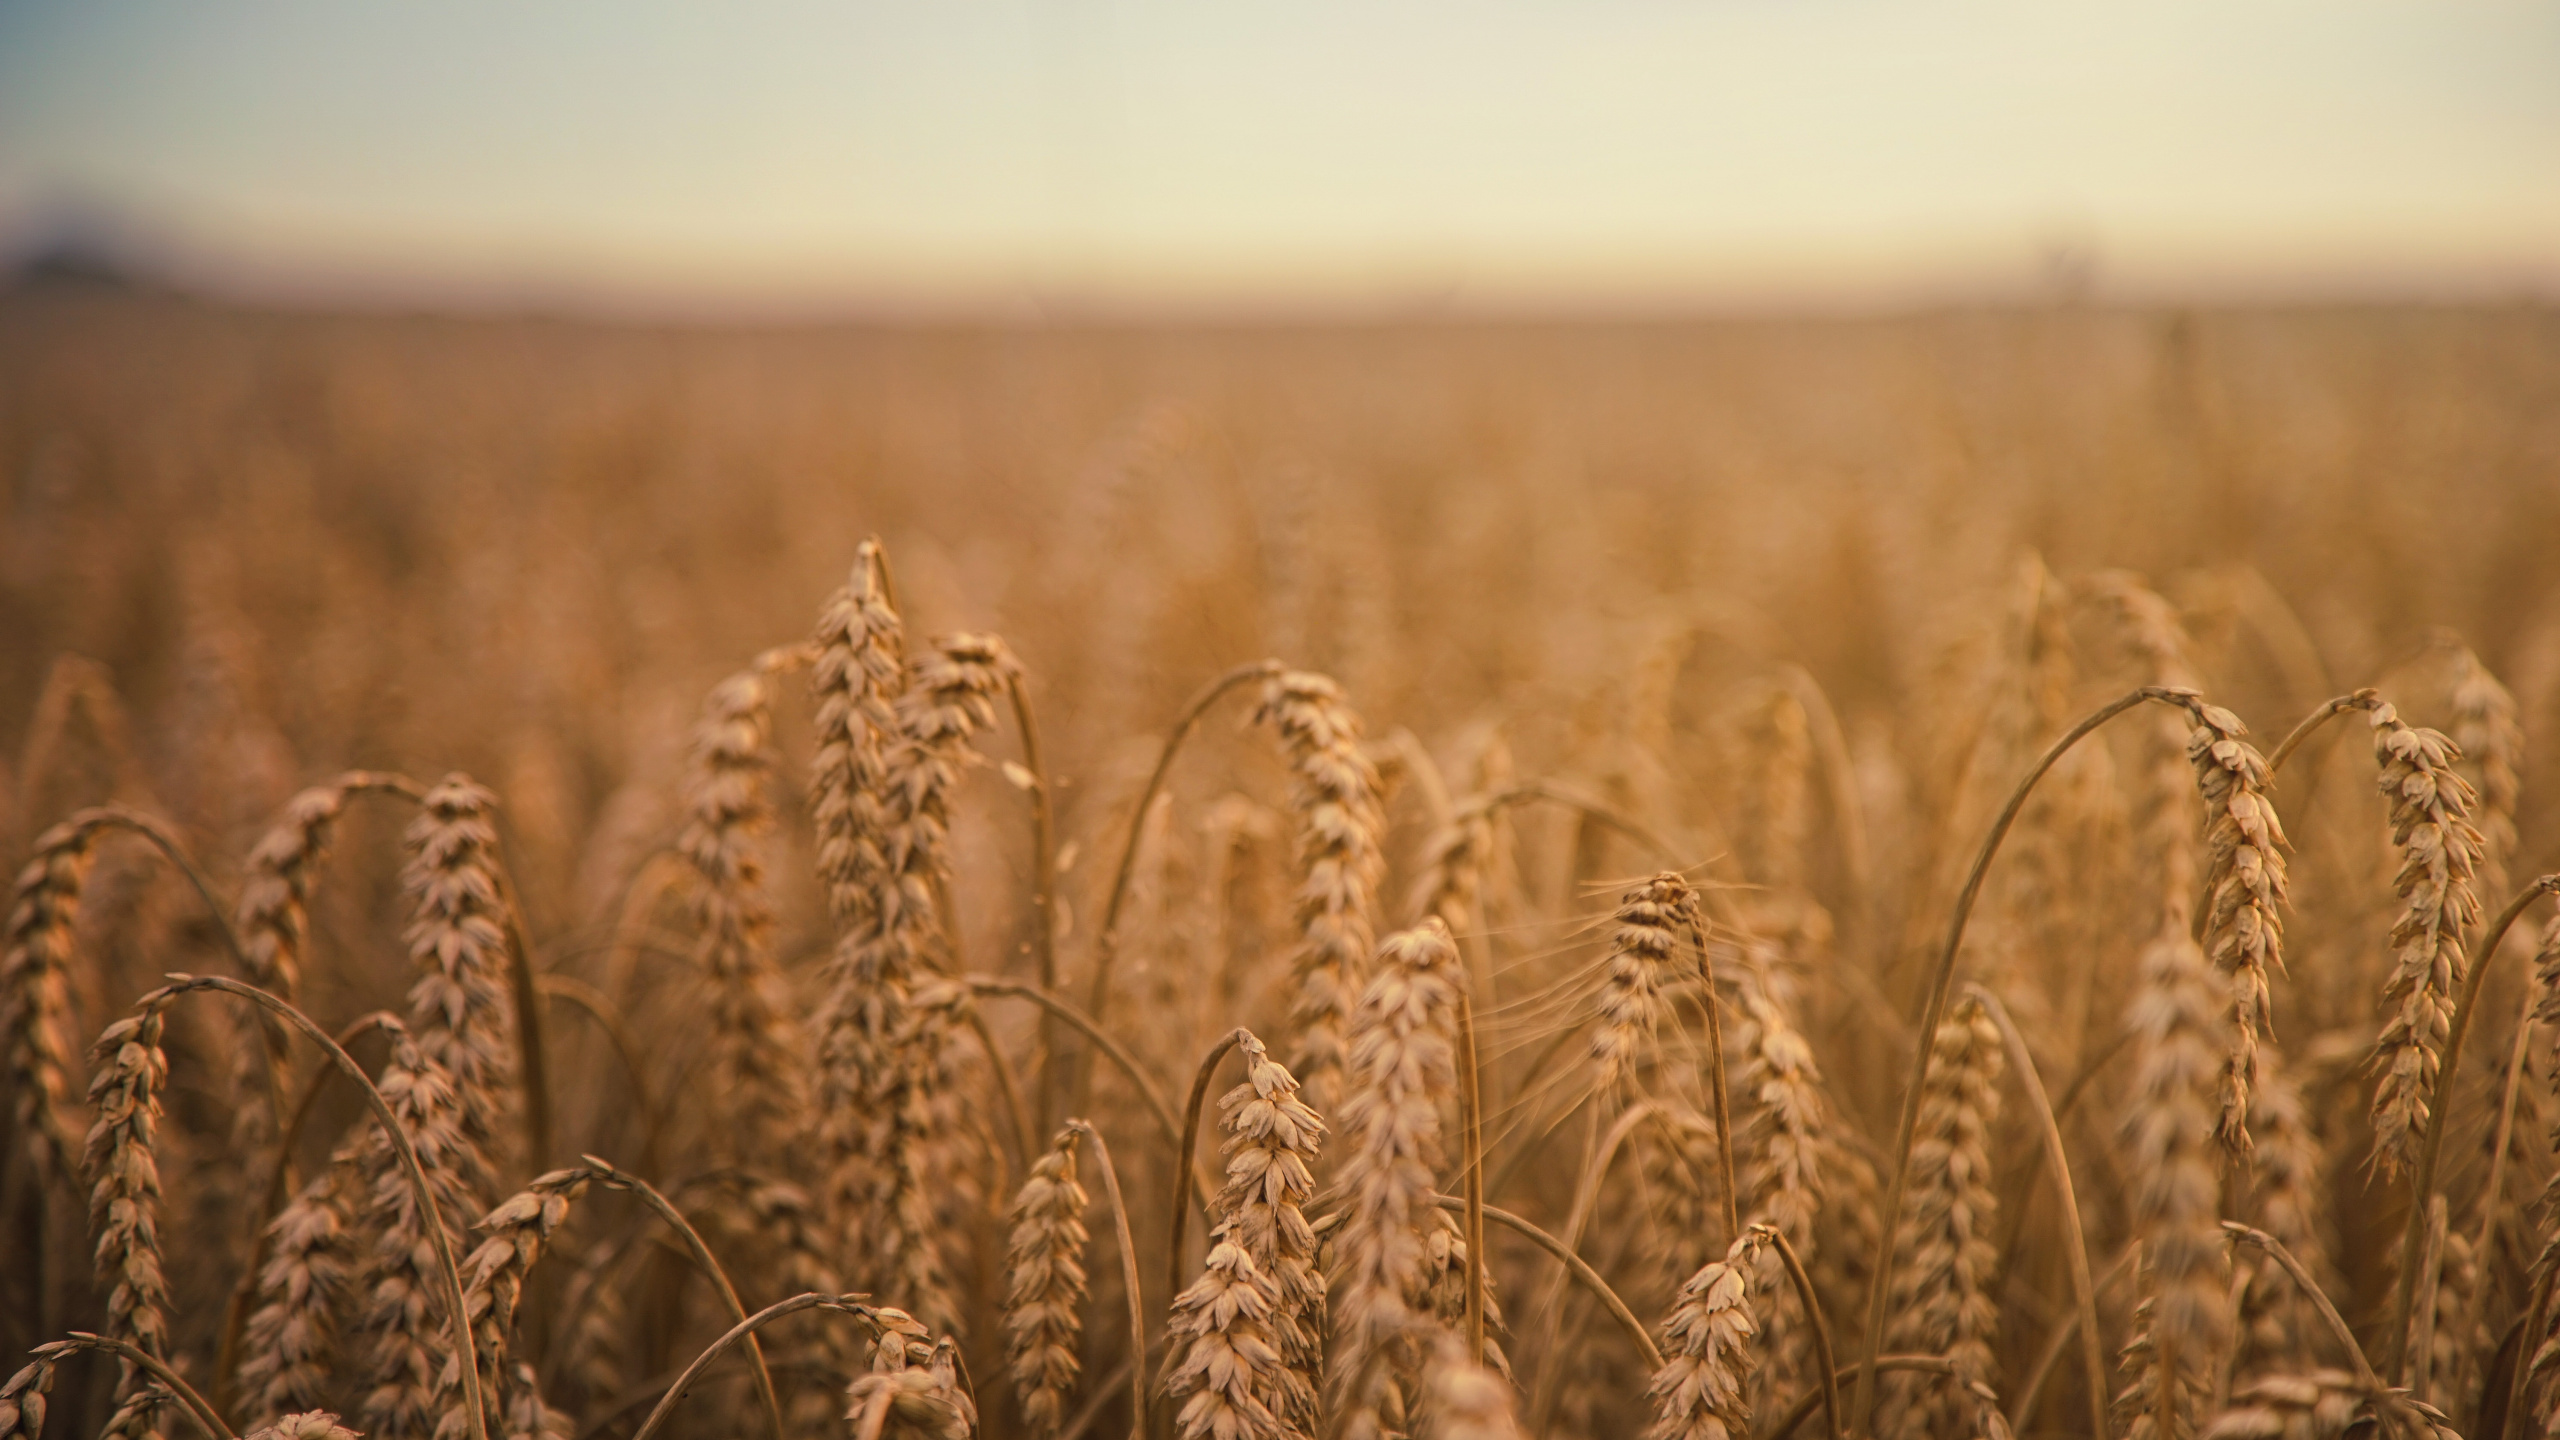 小麦, 谷物, 农作物, Rye, 粮食 壁纸 2560x1440 允许